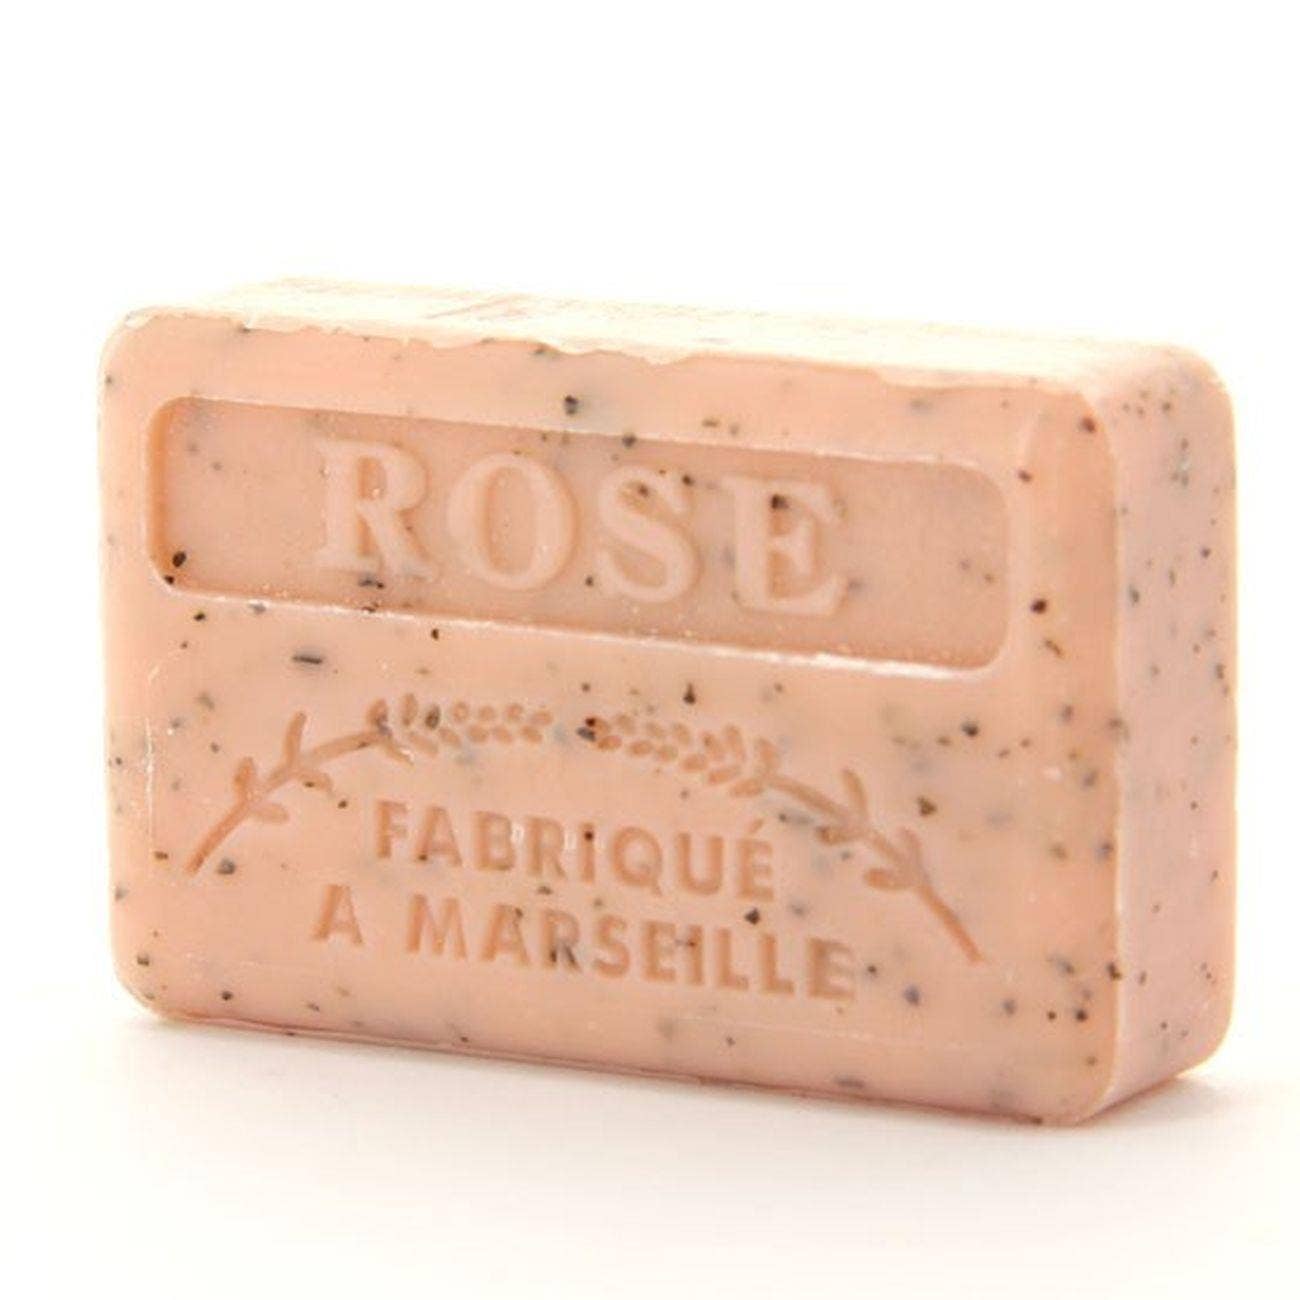 Rose Petals Bar Soap 125g